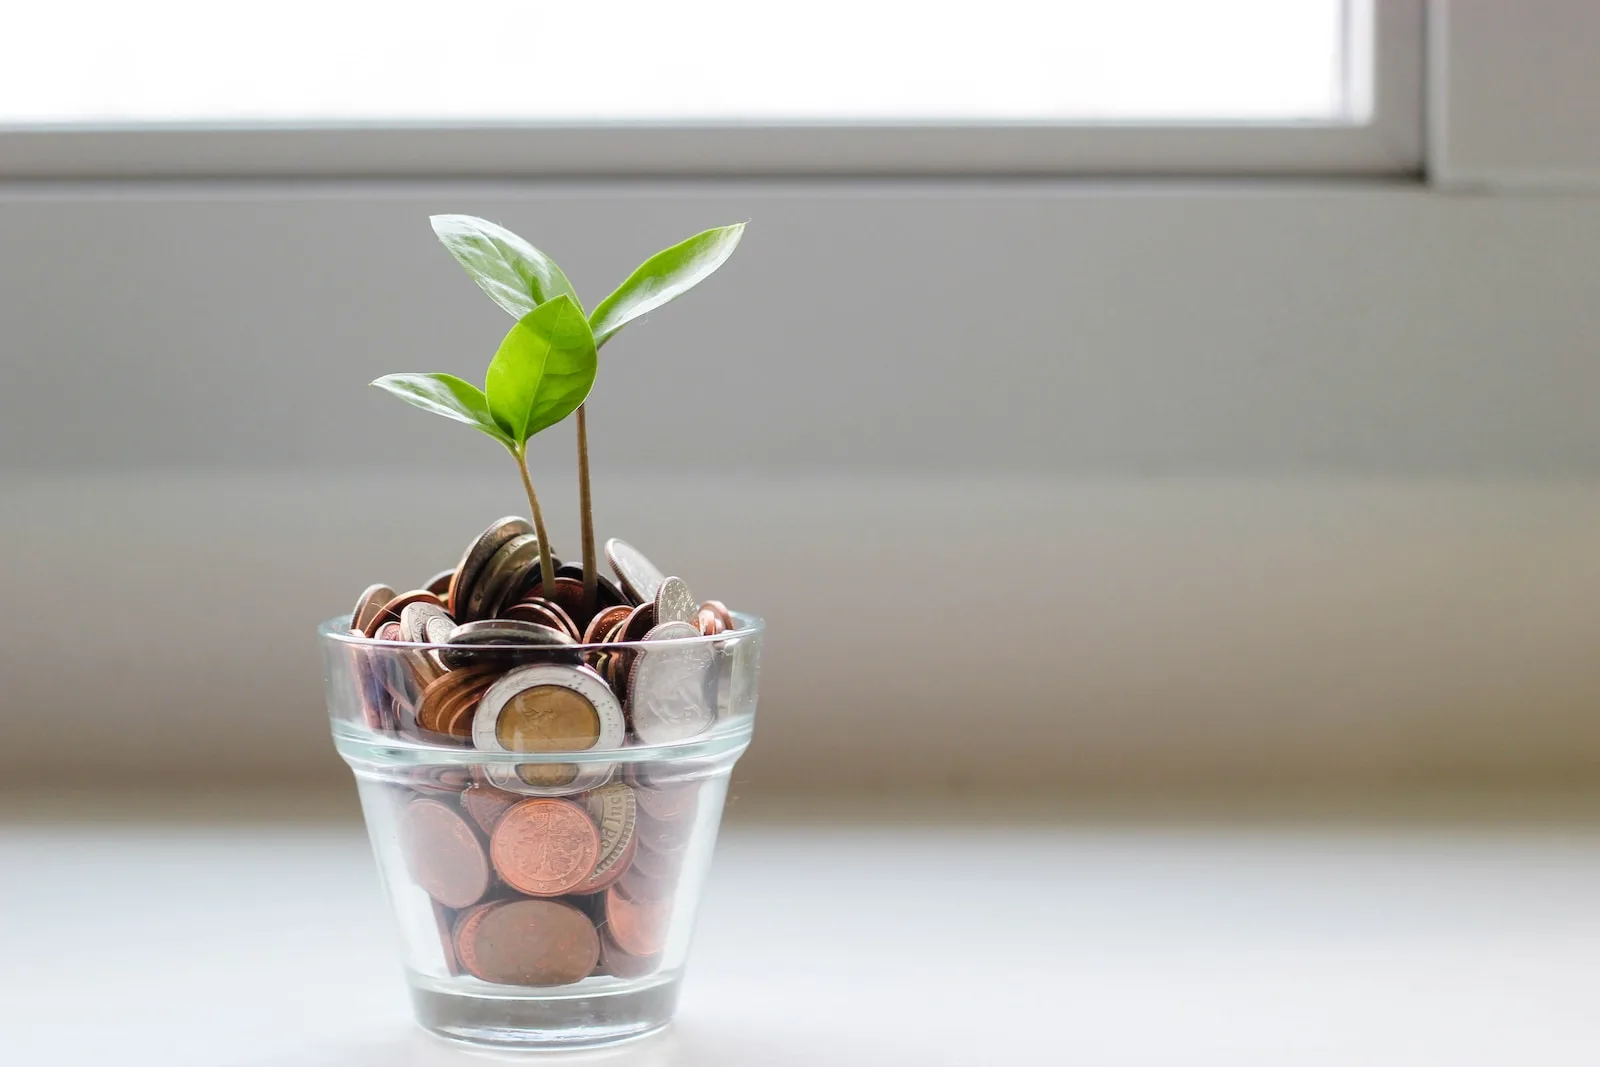 Planta verde en vaso transparente con monedas.